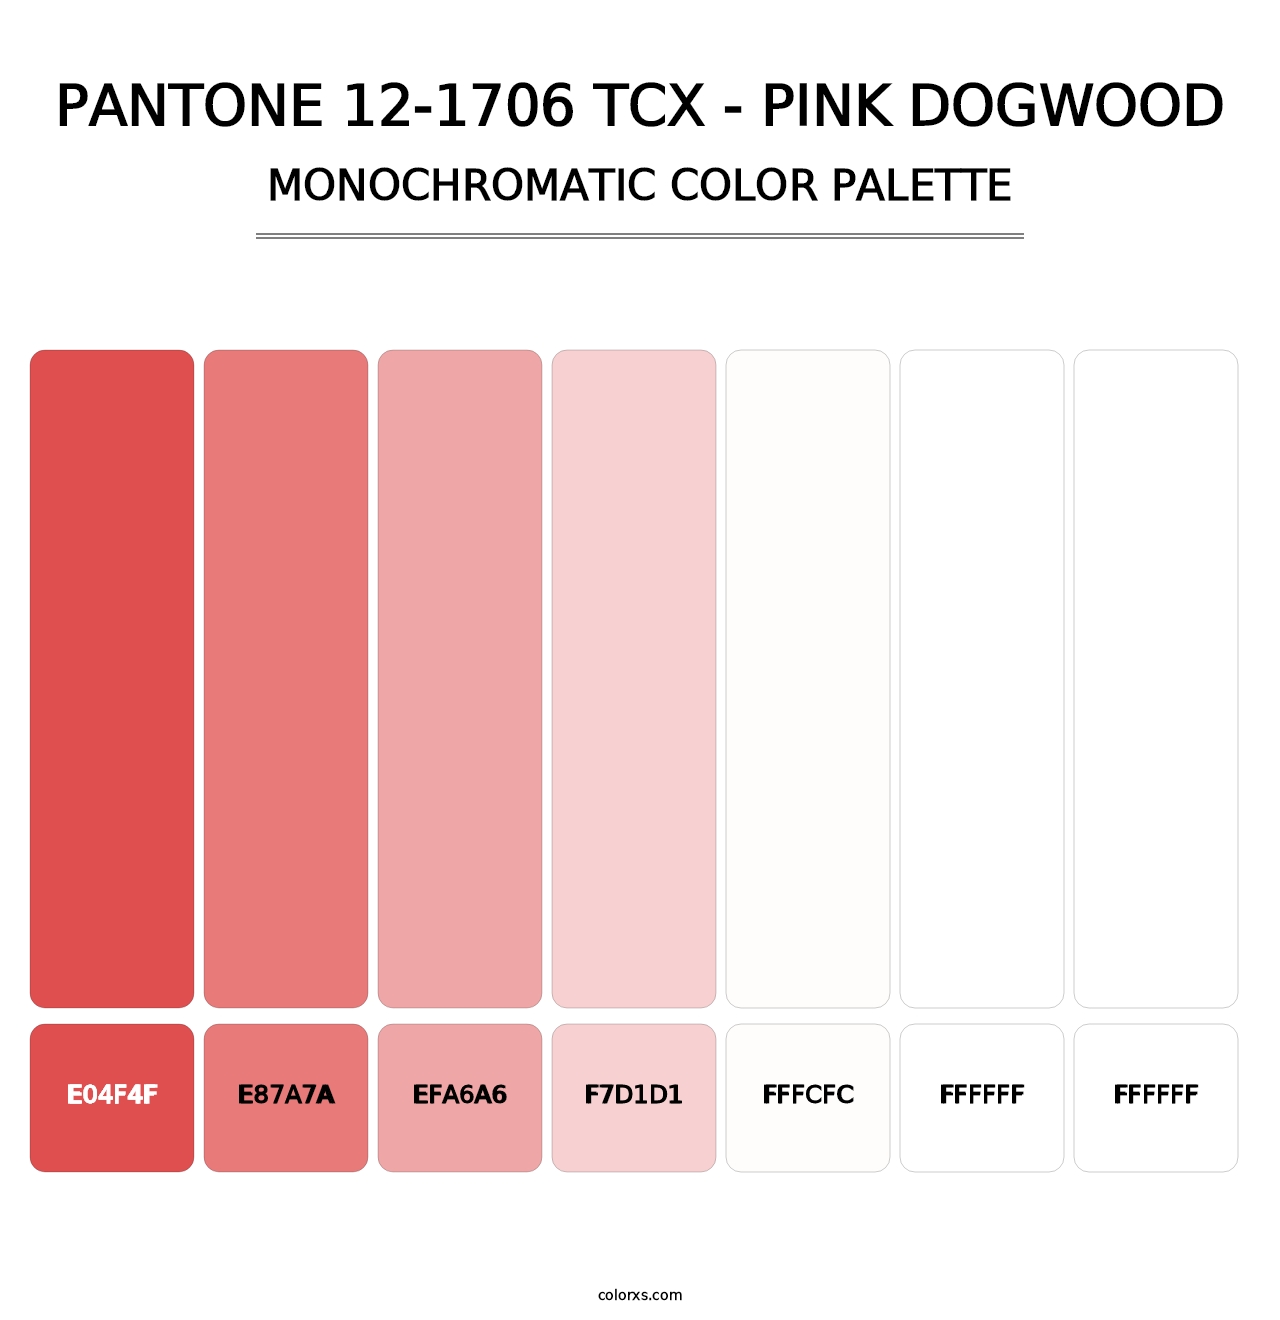 PANTONE 12-1706 TCX - Pink Dogwood - Monochromatic Color Palette